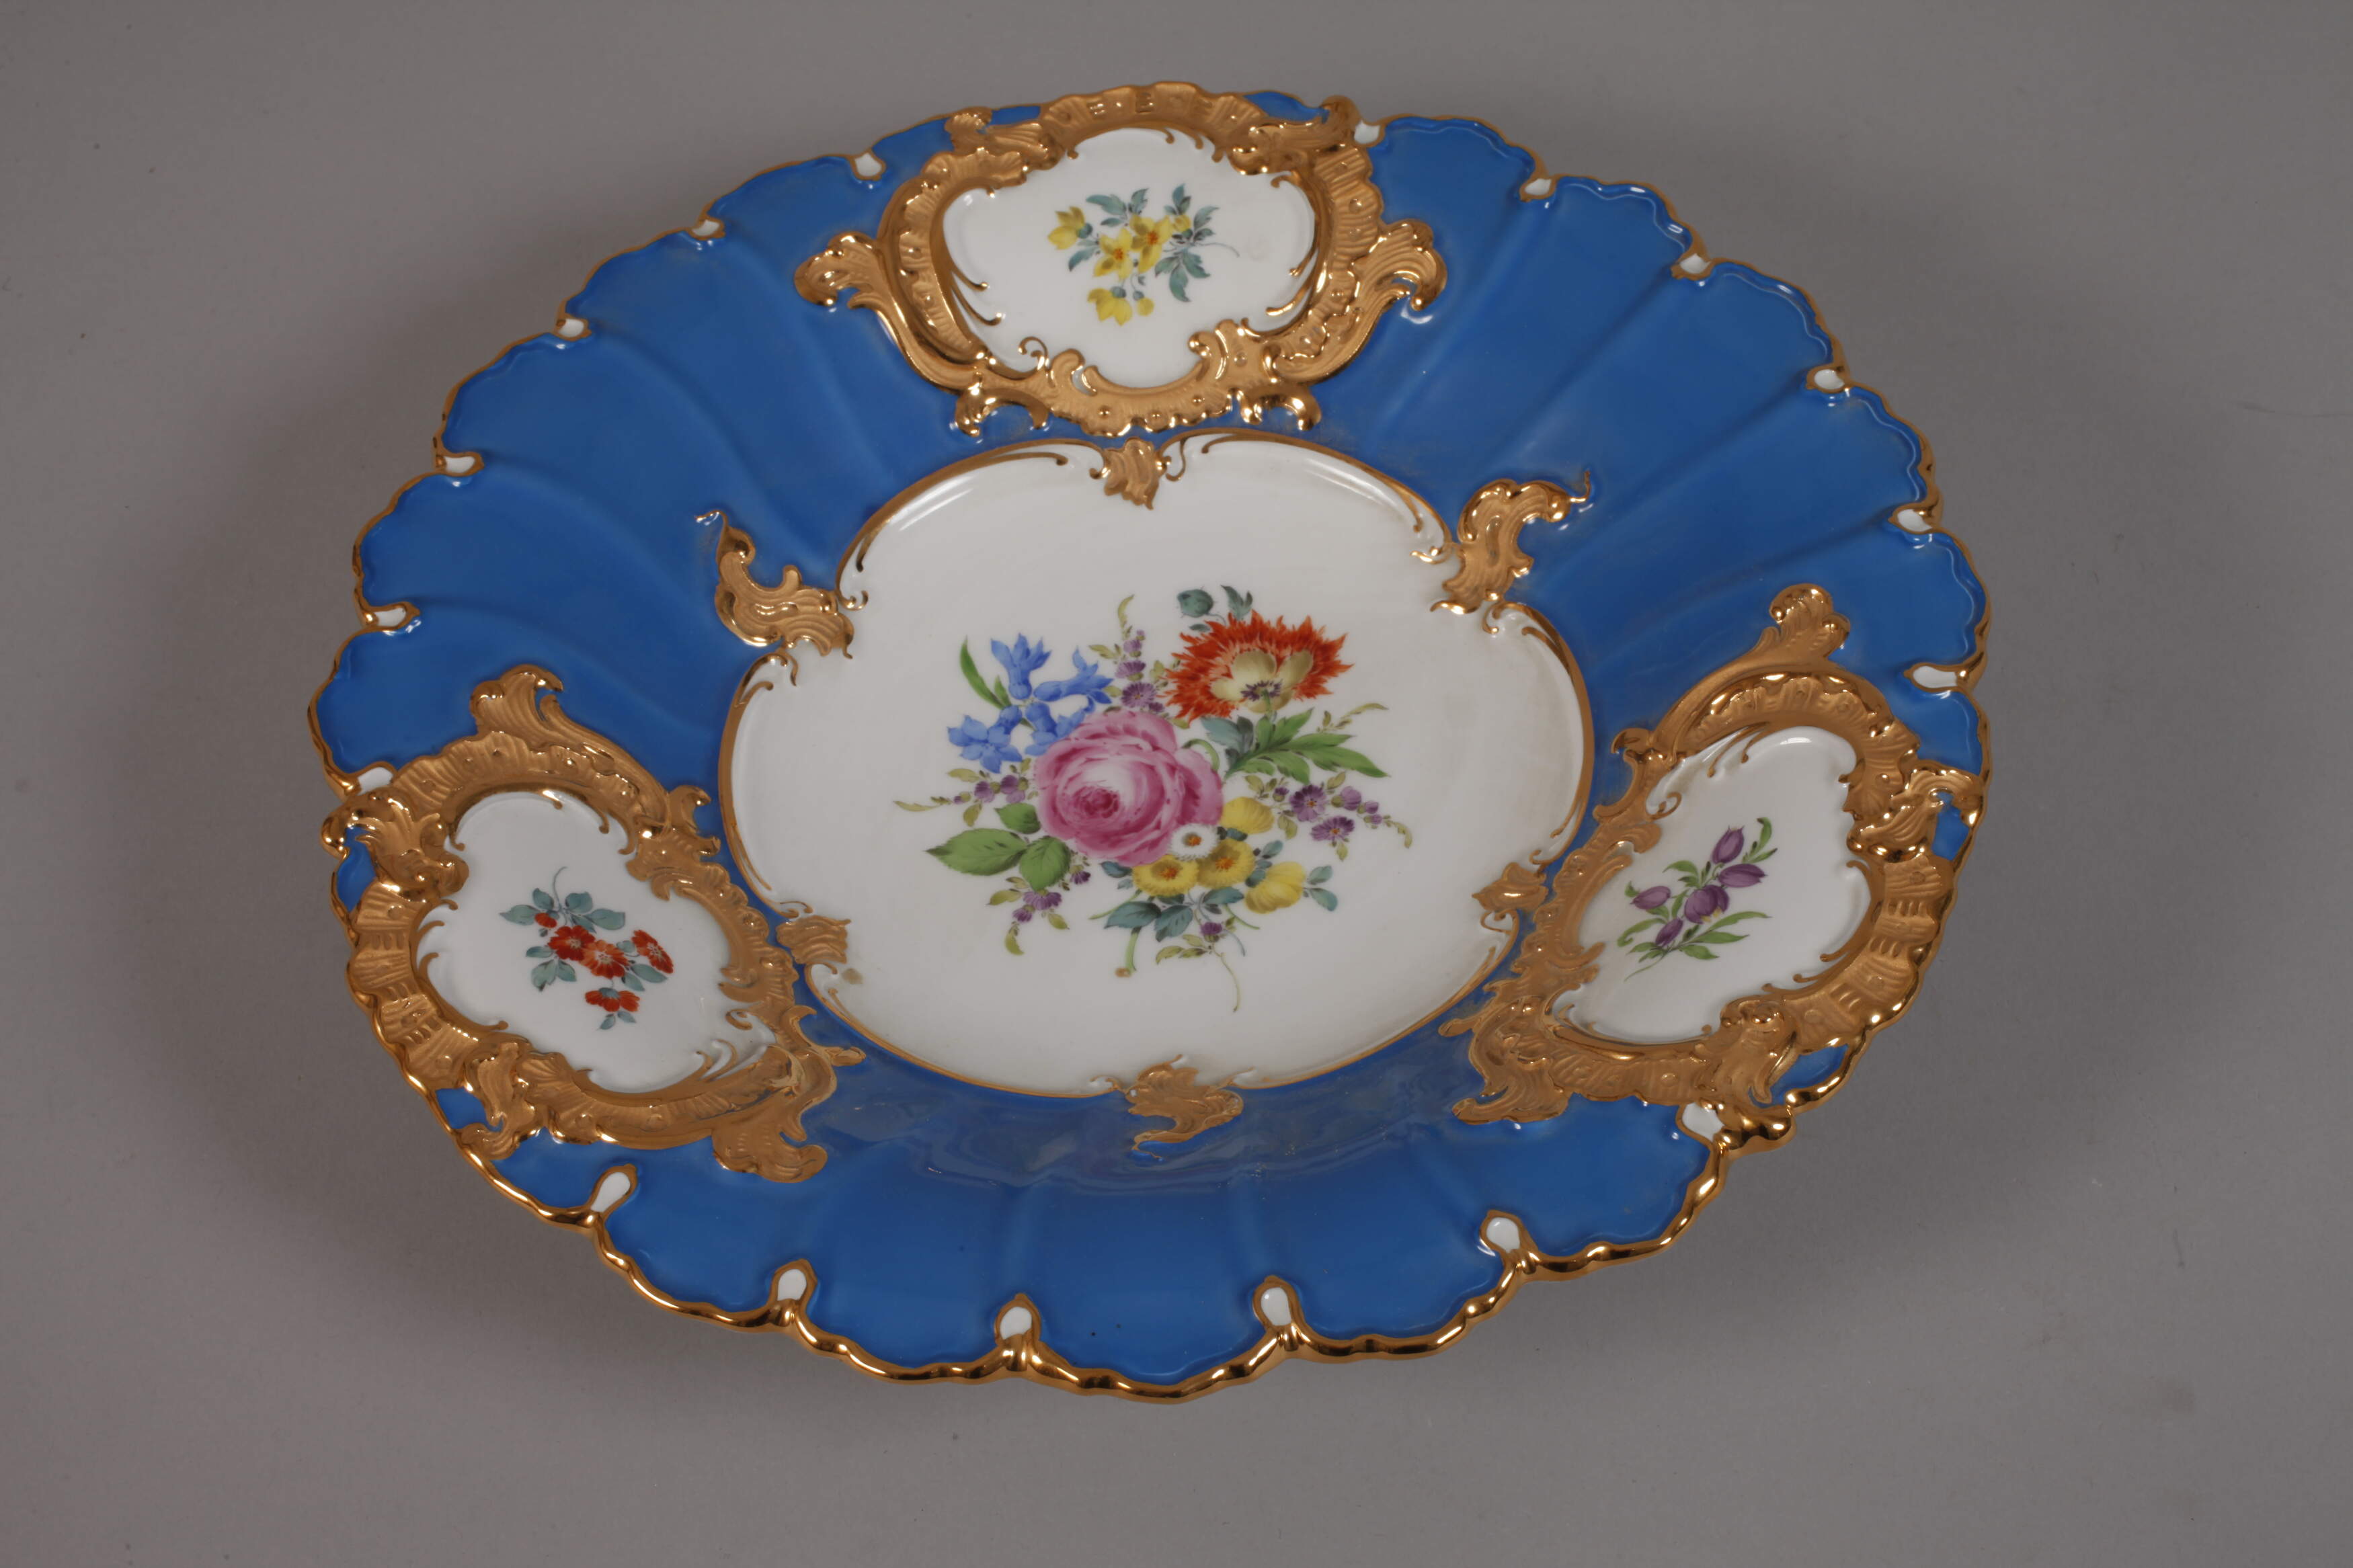 Meissen ceremonial bowl "Blumenbukett" - Image 2 of 3